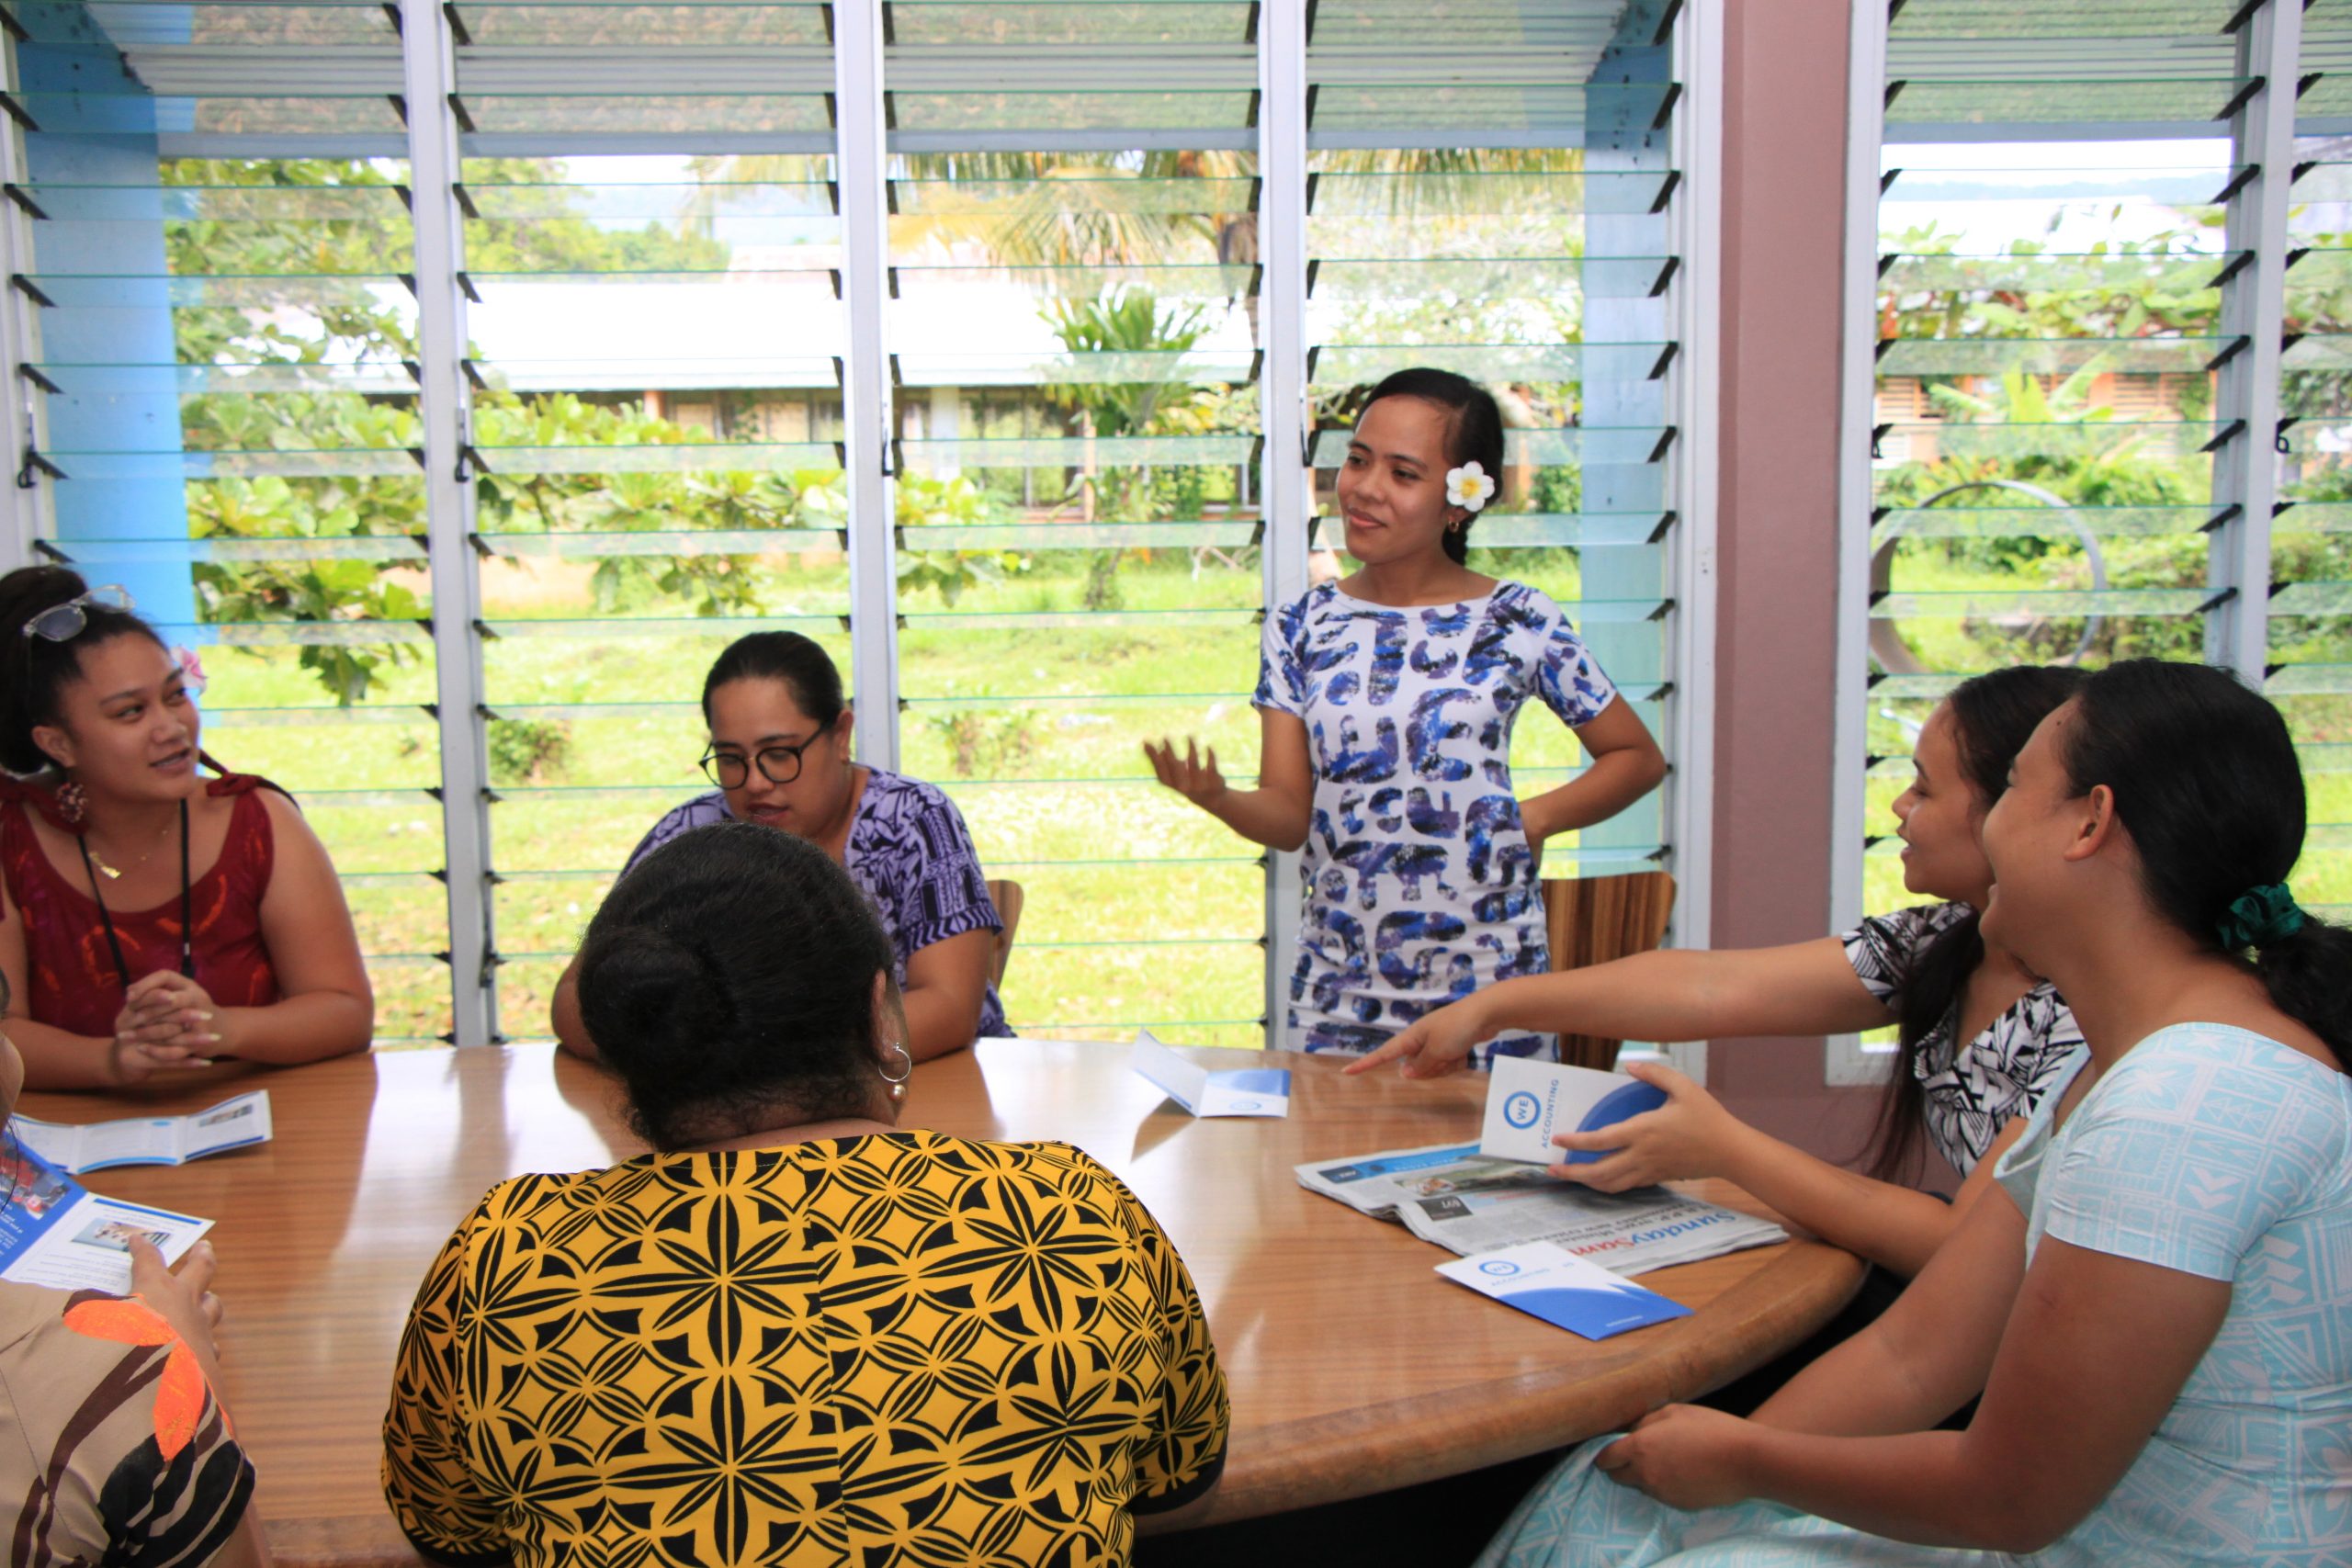 Creating skilled jobs in Samoa